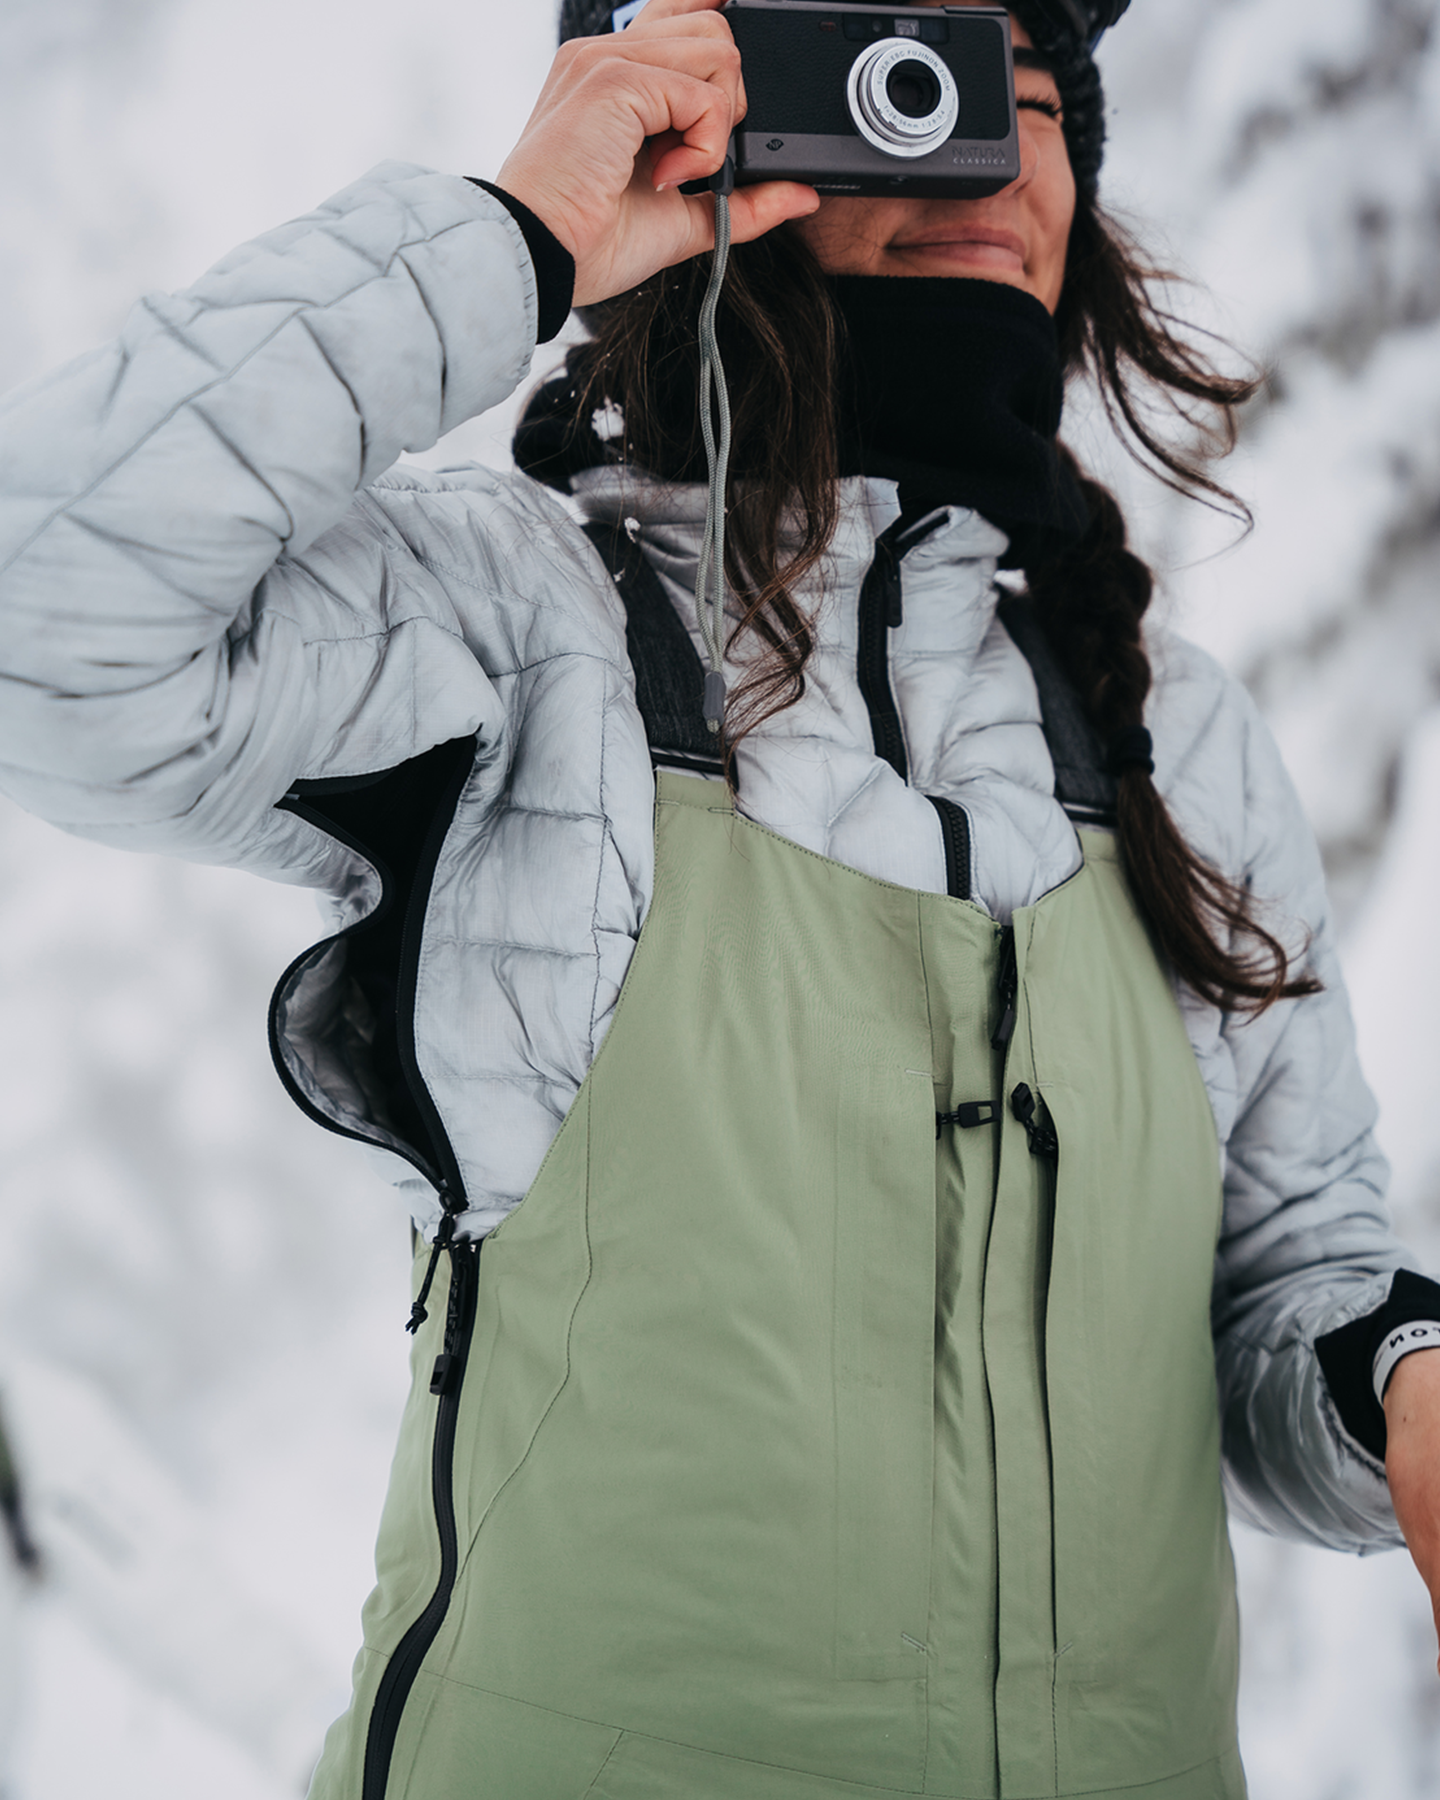 Burton Women's [ak]® Baker Down Jacket - Gray Cloud Jackets - Trojan Wake Ski Snow